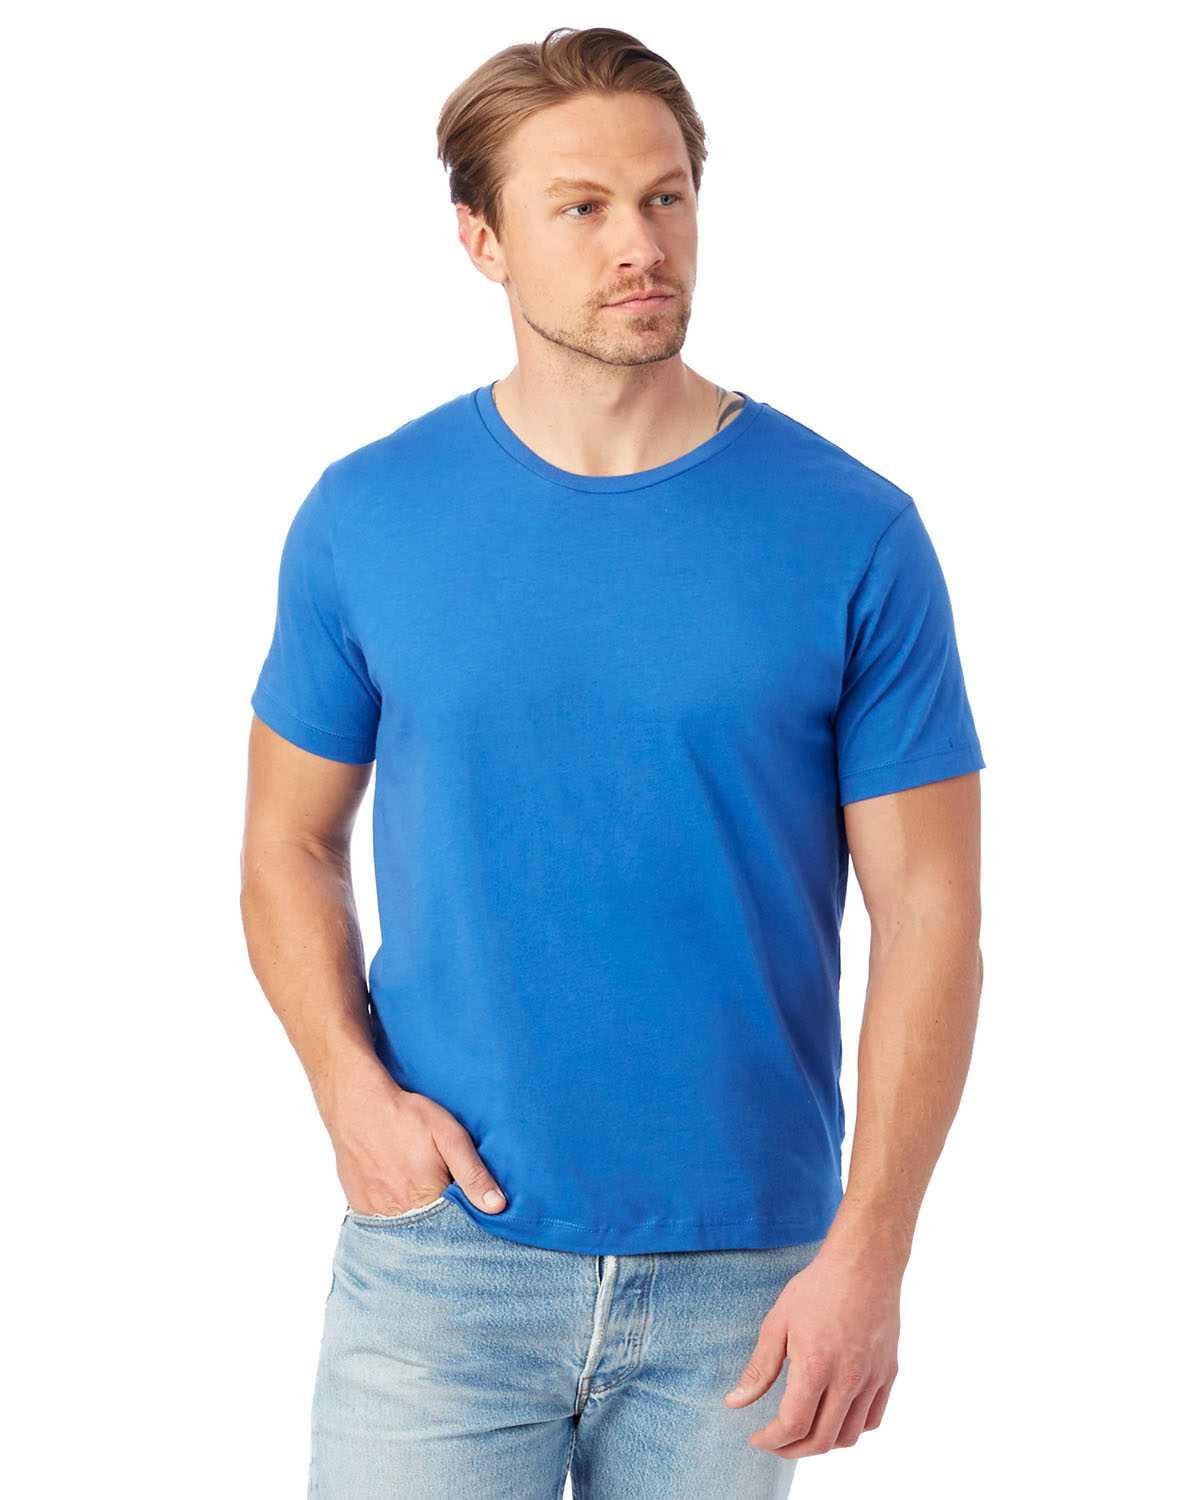 Unisex Go-To T-Shirt - image 1 of 3